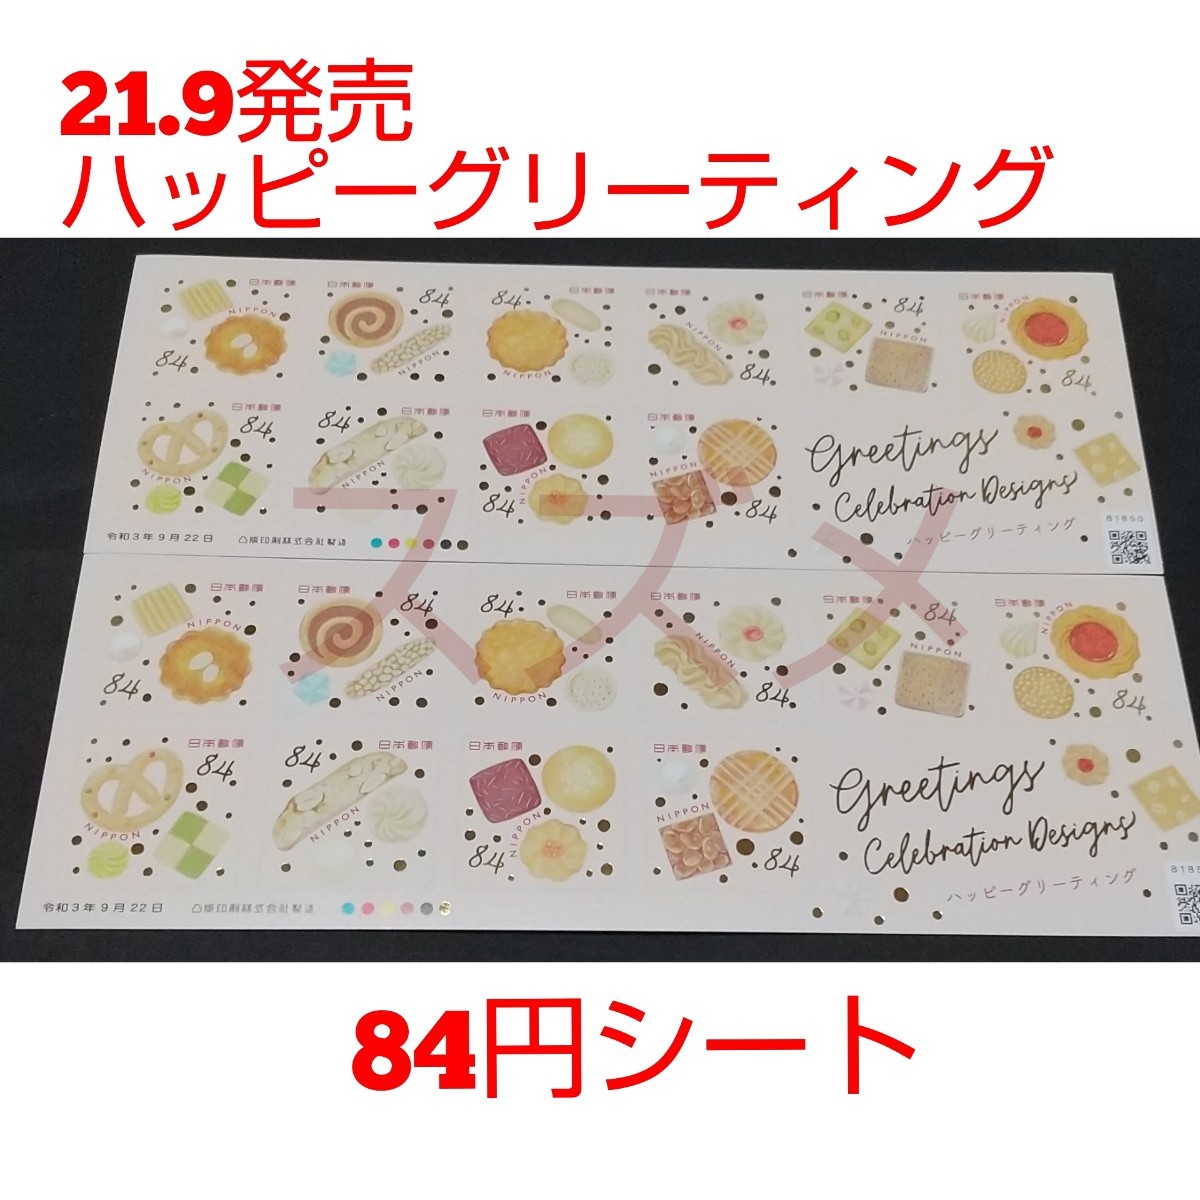 21.9発売 ハッピーグリーティング 84円 シール切手 2シート 1680円分   記念切手